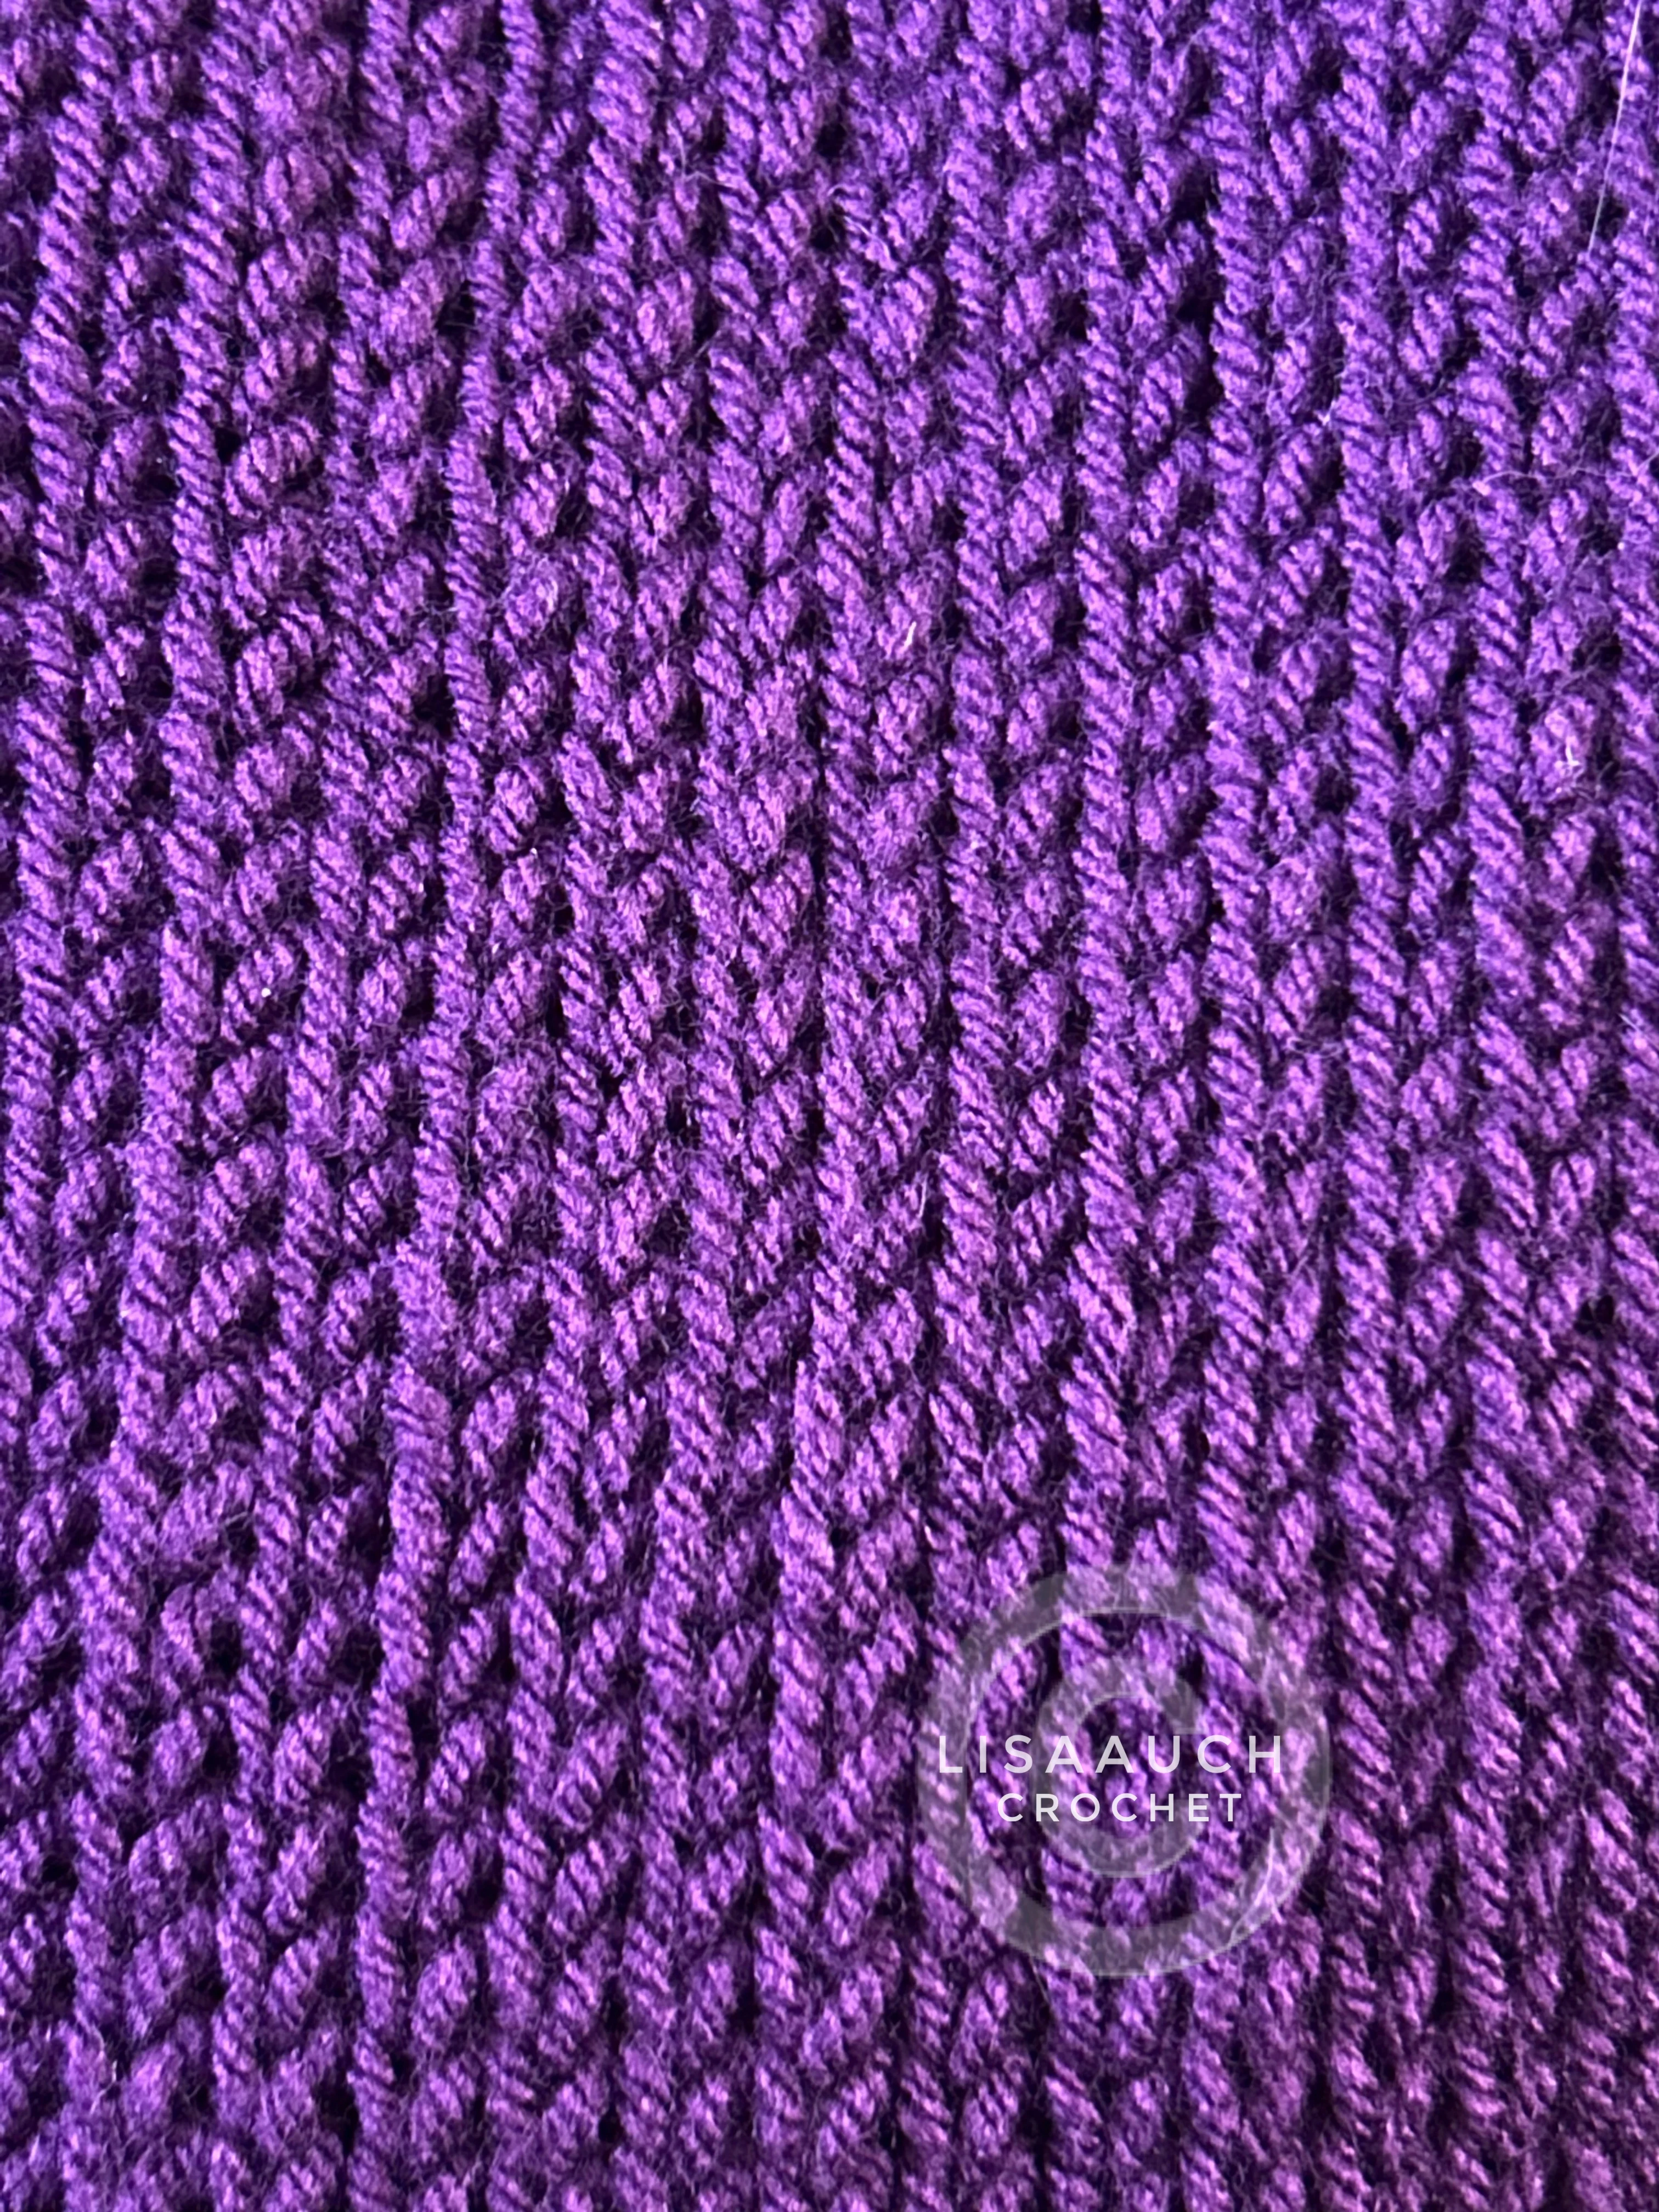 Crochet Knit Stitches Easy Crochet ribbing pattern